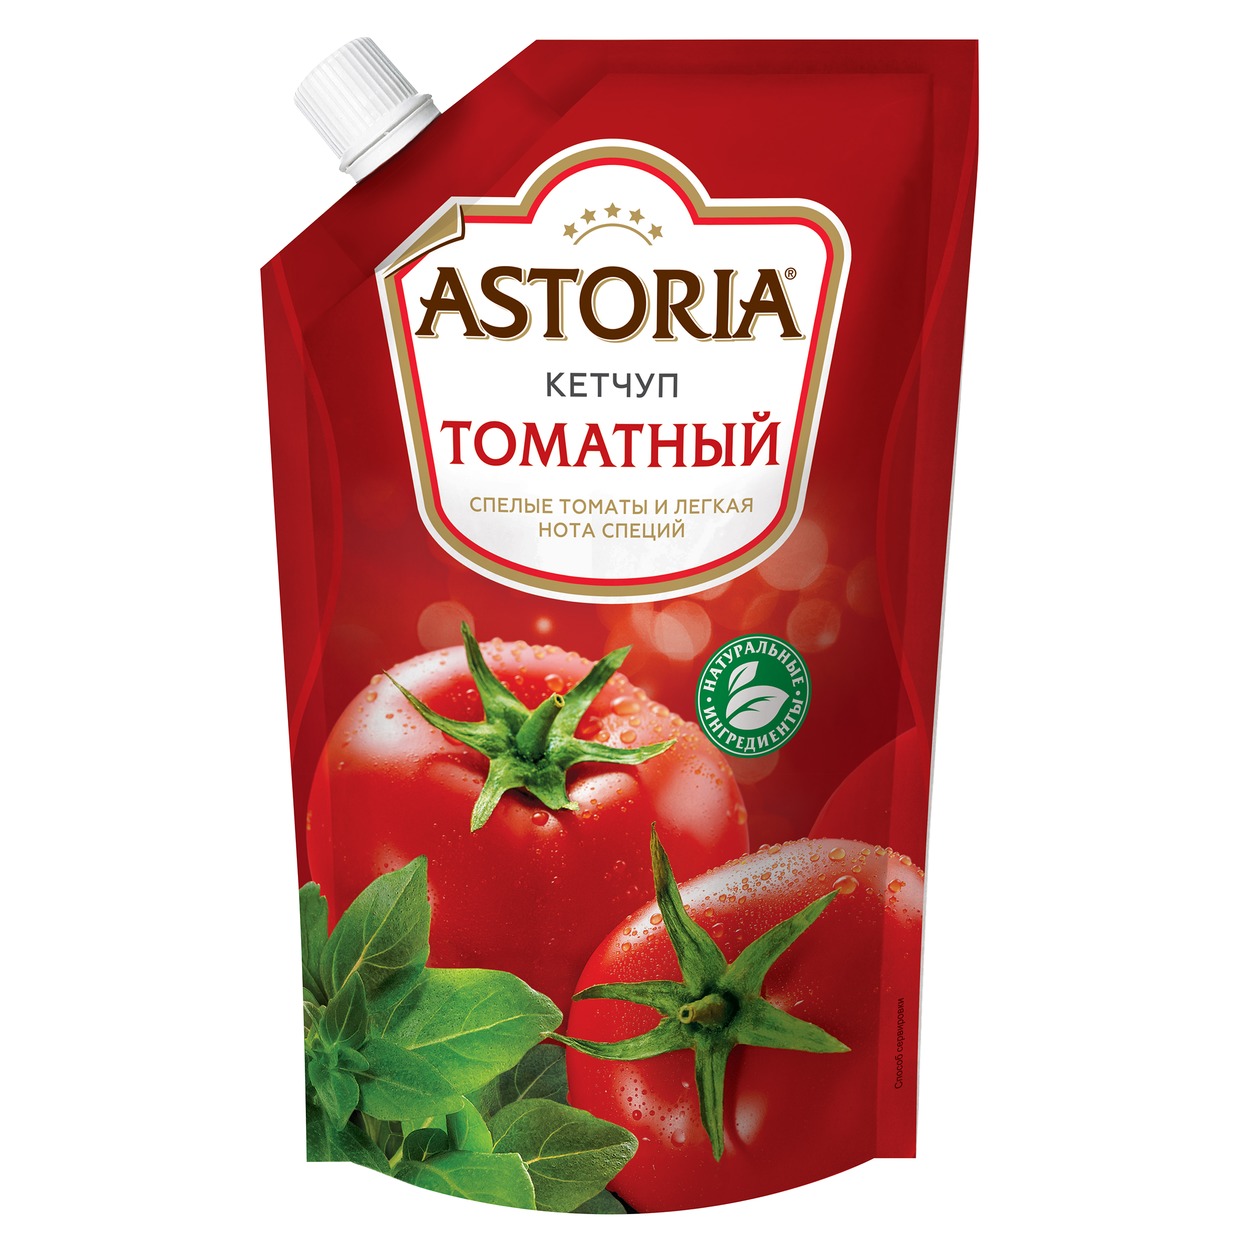 Кетчуп Астория, томатный, 330 г по акции в Пятерочке